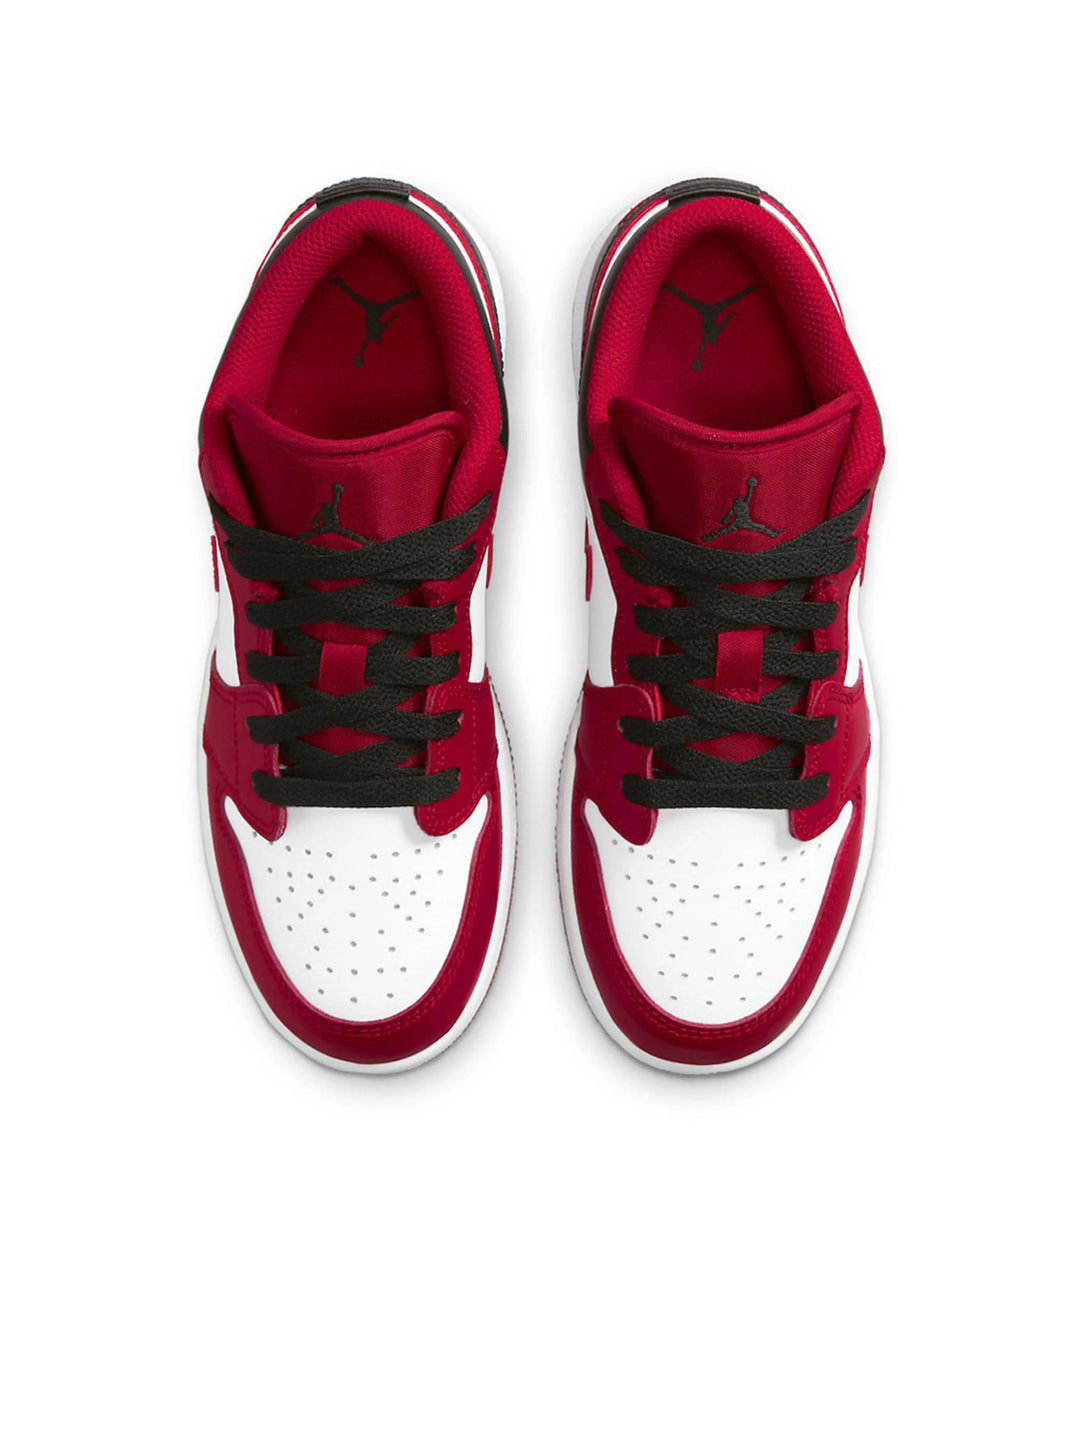 Nike Air Jordan 1 Low Bulls (GS) Prior